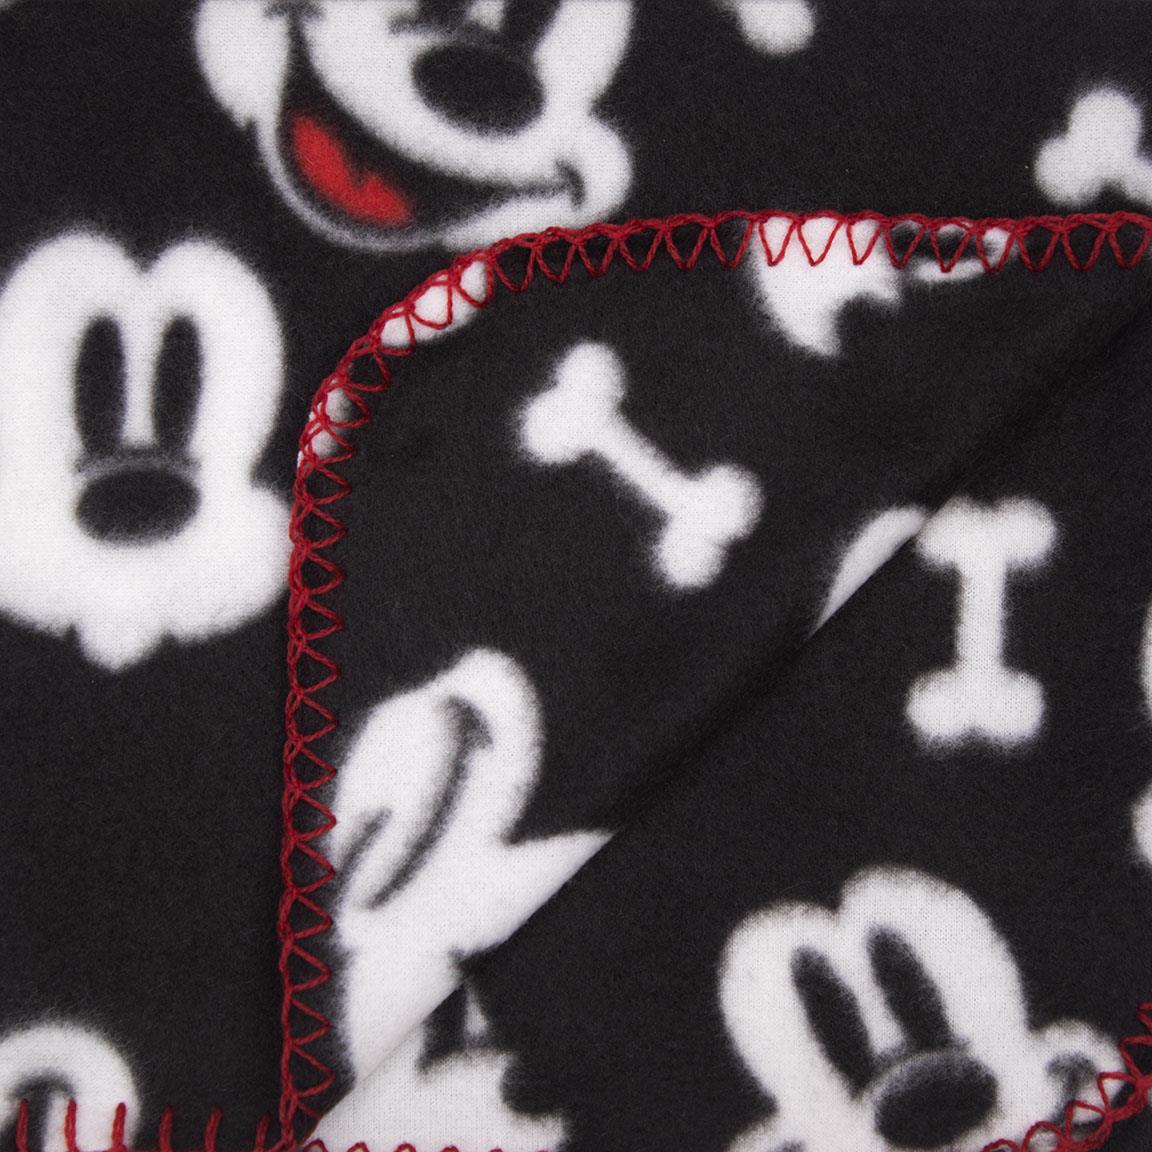 MICKEY-Katzendecke / Eine Decke in der verzauberten Welt von Mickey